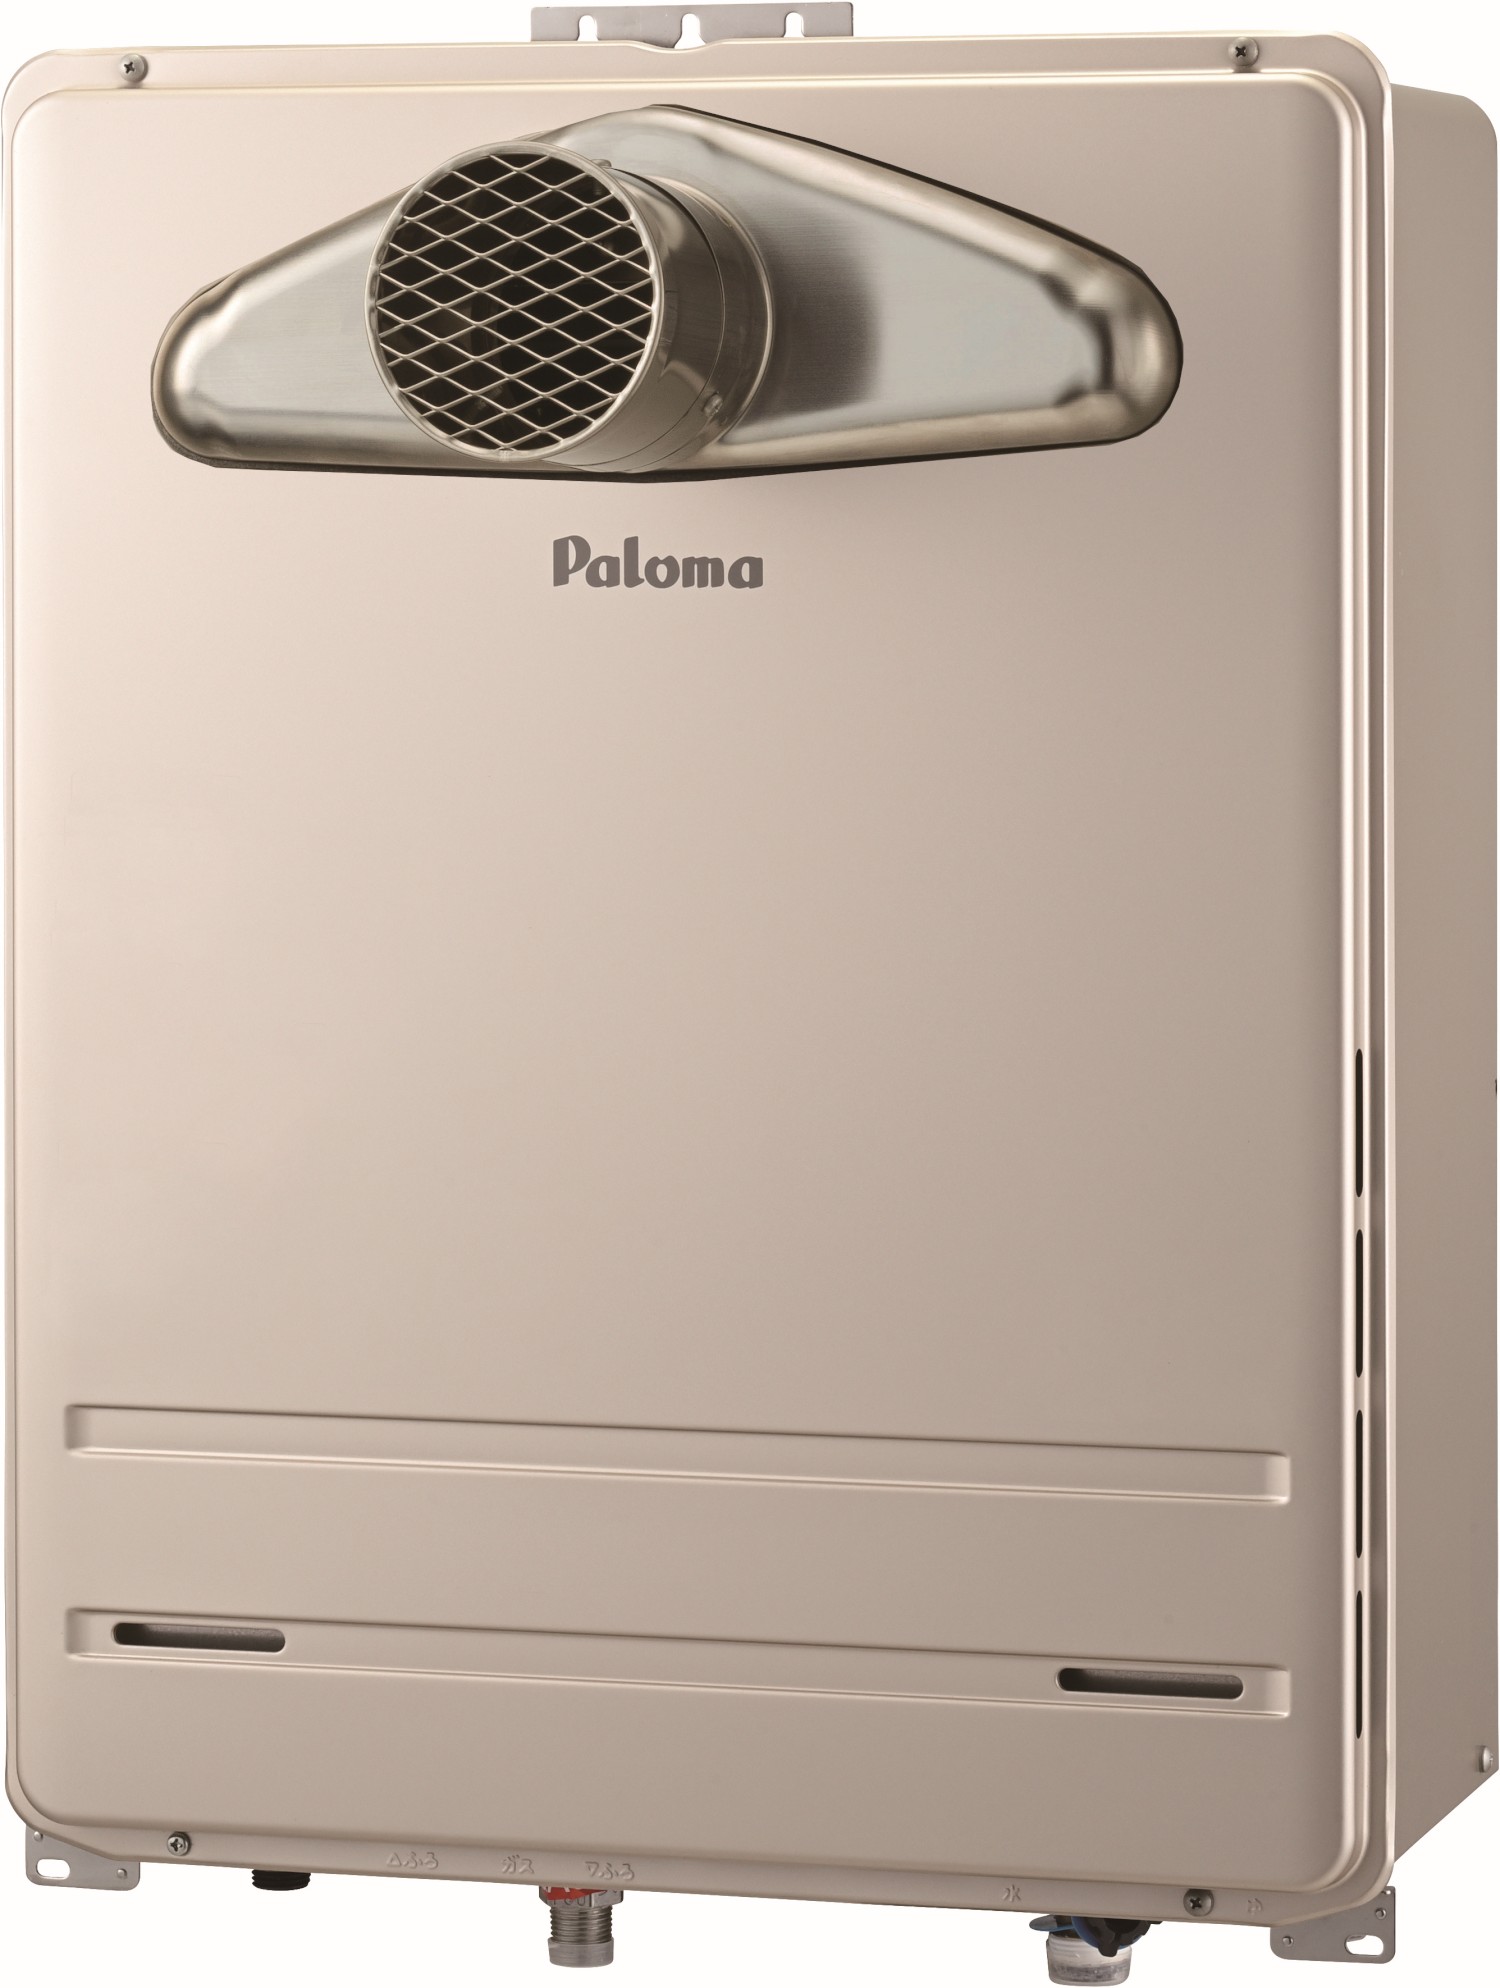 付与 パロマ ガスふろ給湯器 オートタイプ 屋外設置 壁掛型 PS 標準設置型 オート スタンダード 16号 都市ガス paloma